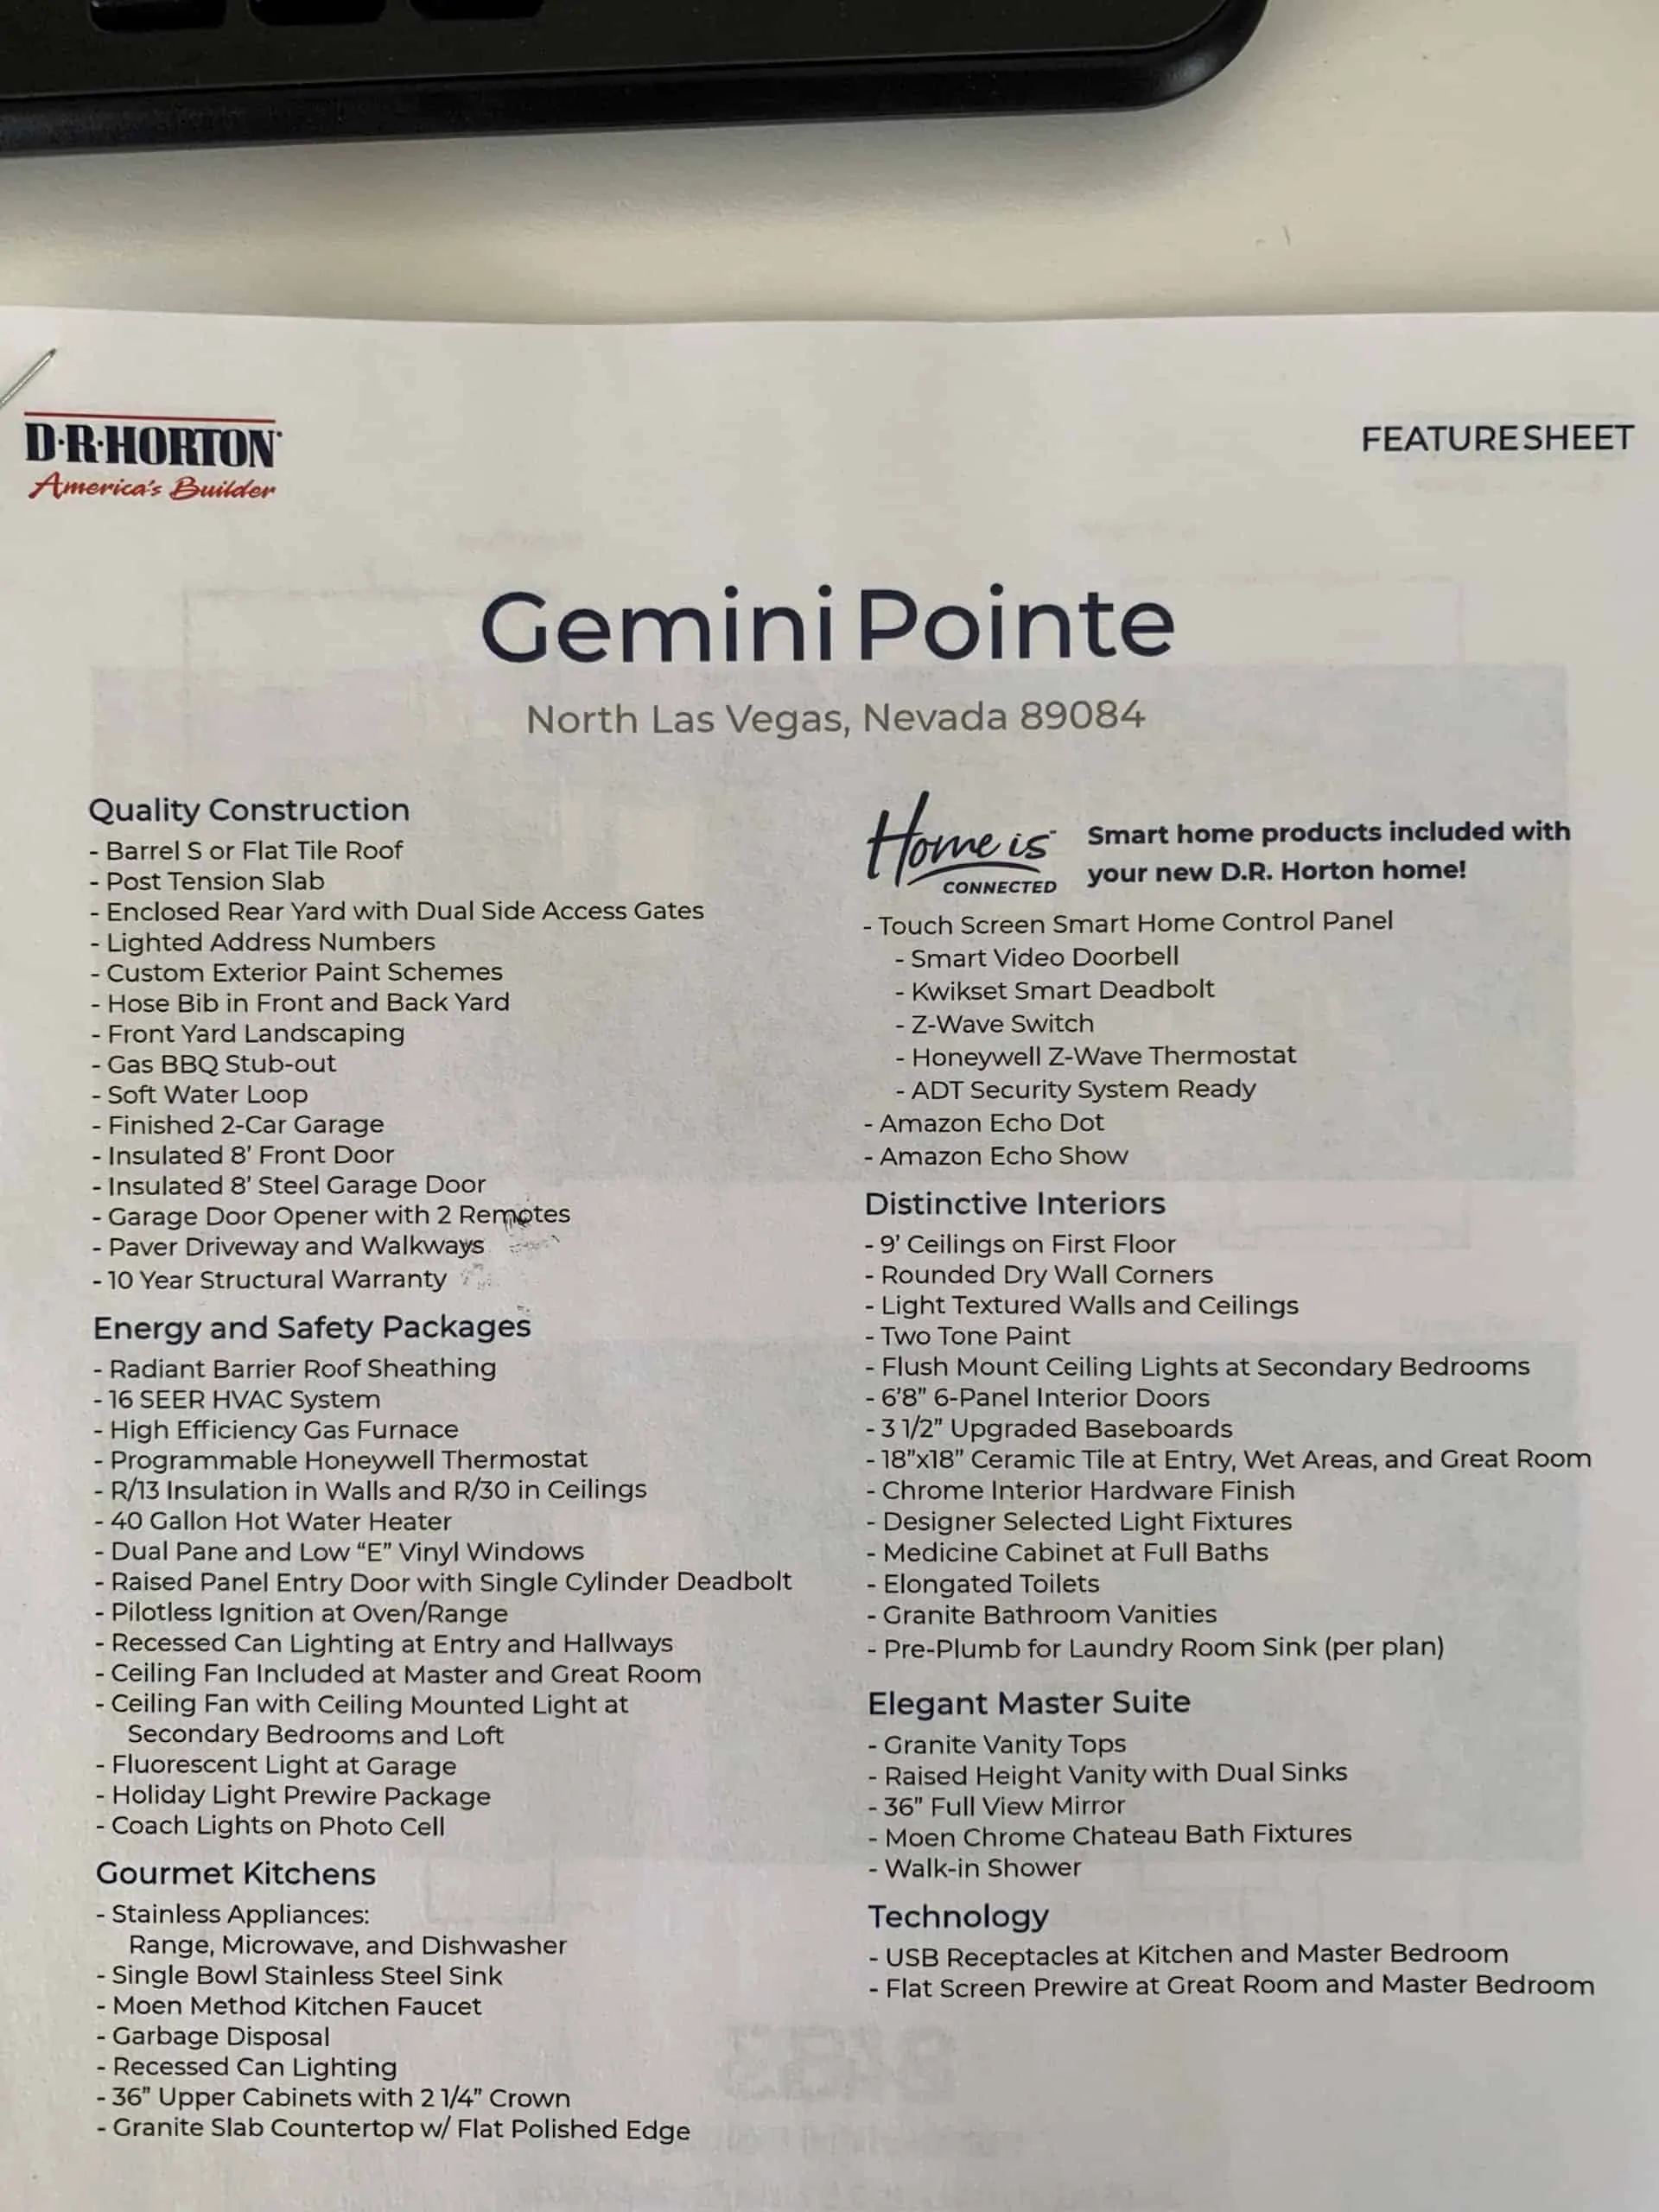 Gemini Pointe Features